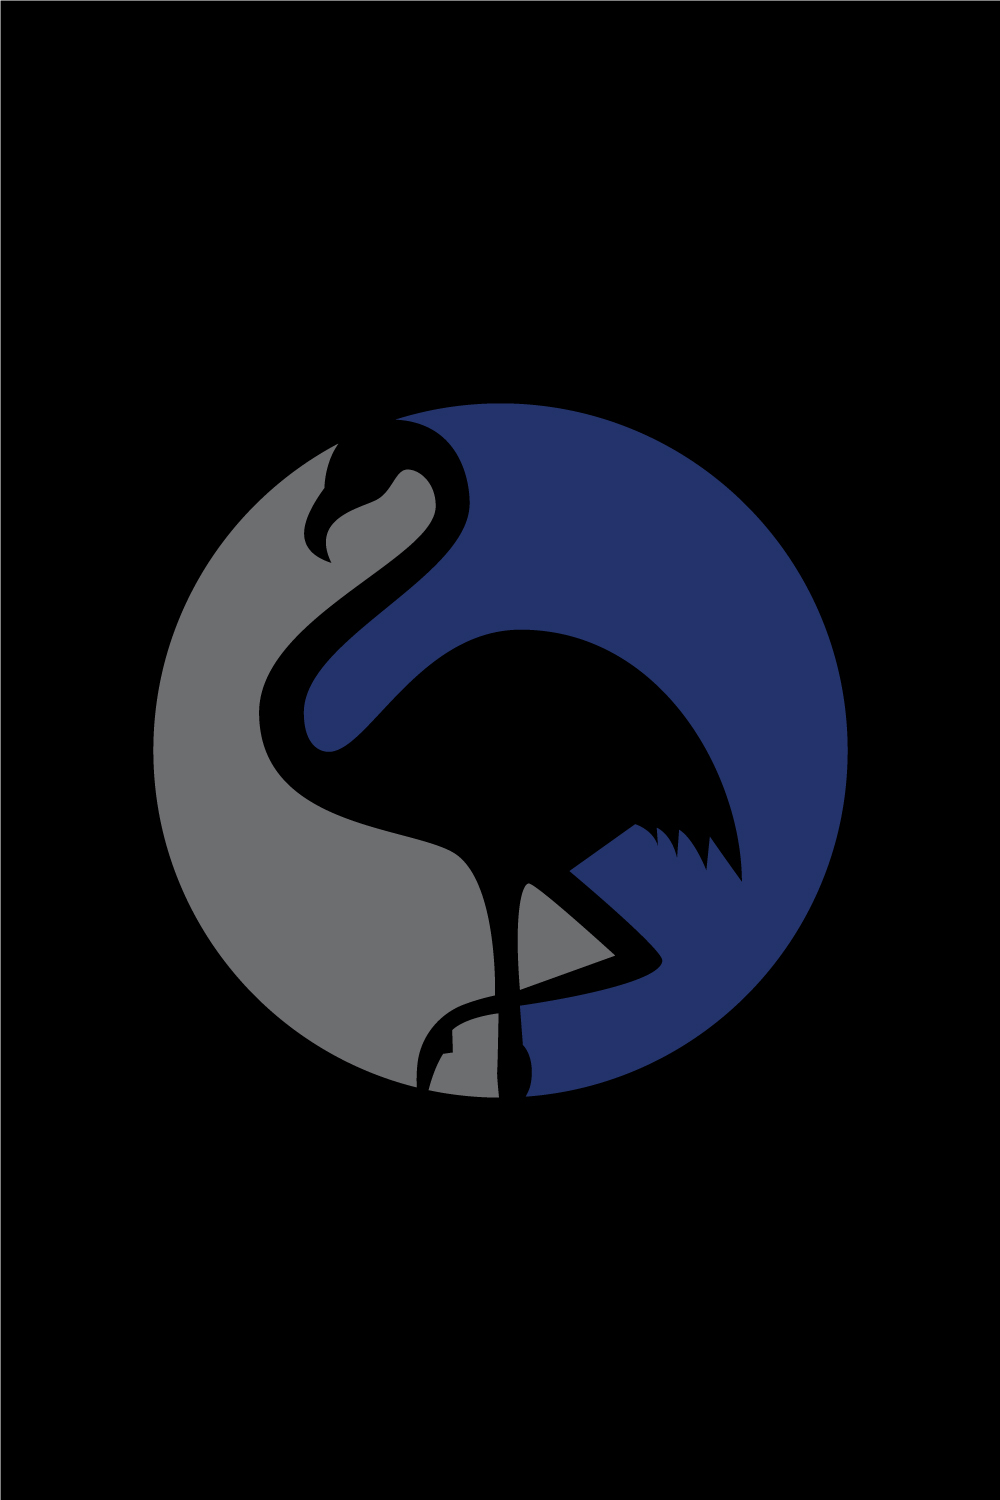 Pelican bird on beach vector logo, Bird logo design vector illustration pinterest preview image.